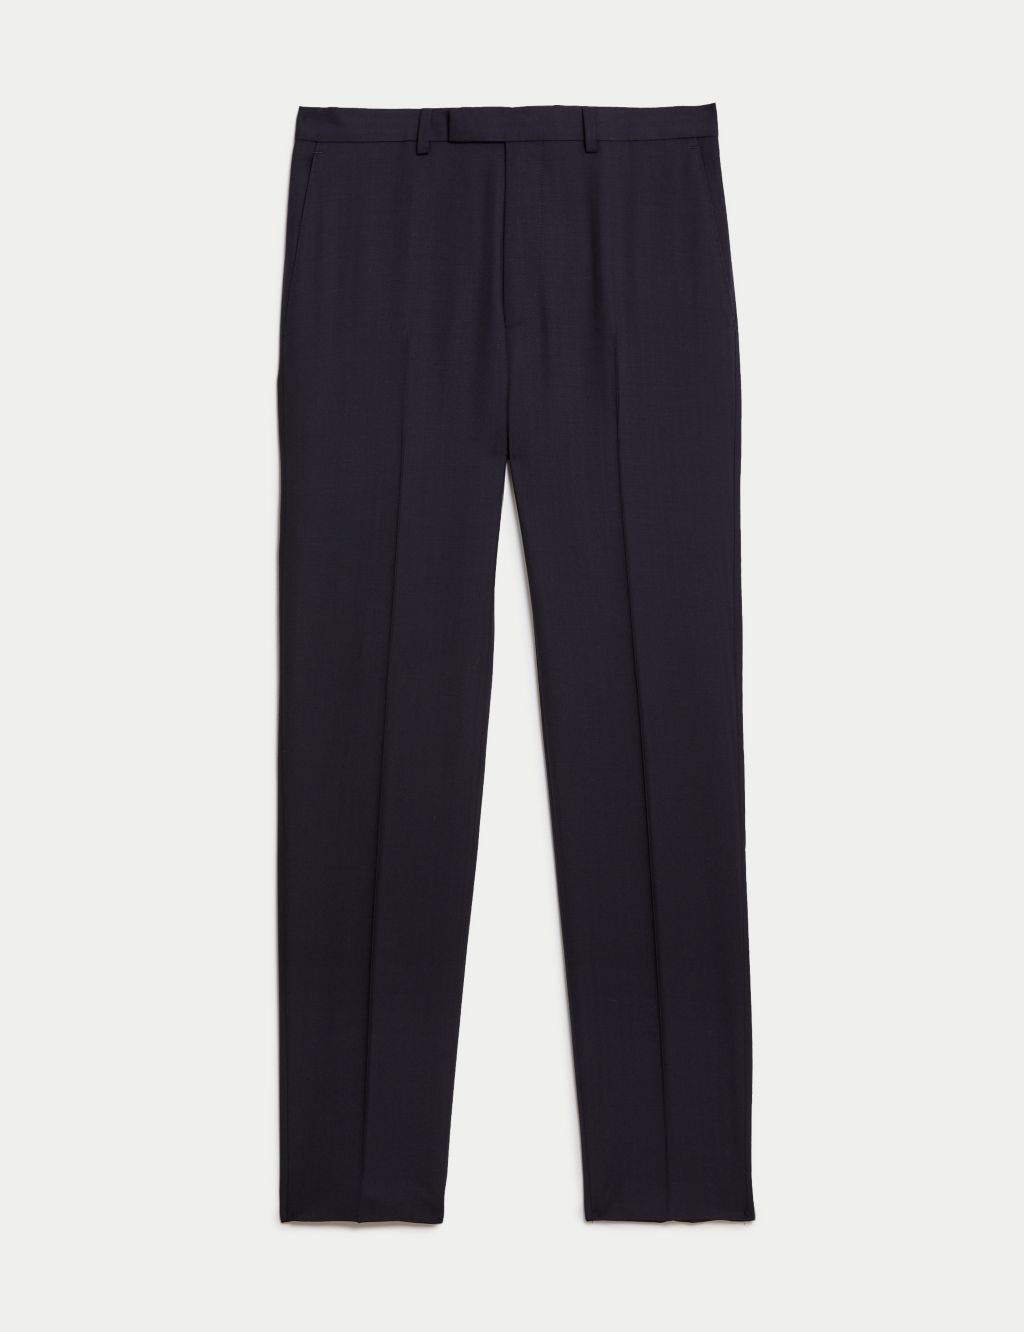 Slim Fit Pure Wool Herringbone Suit Trousers image 1